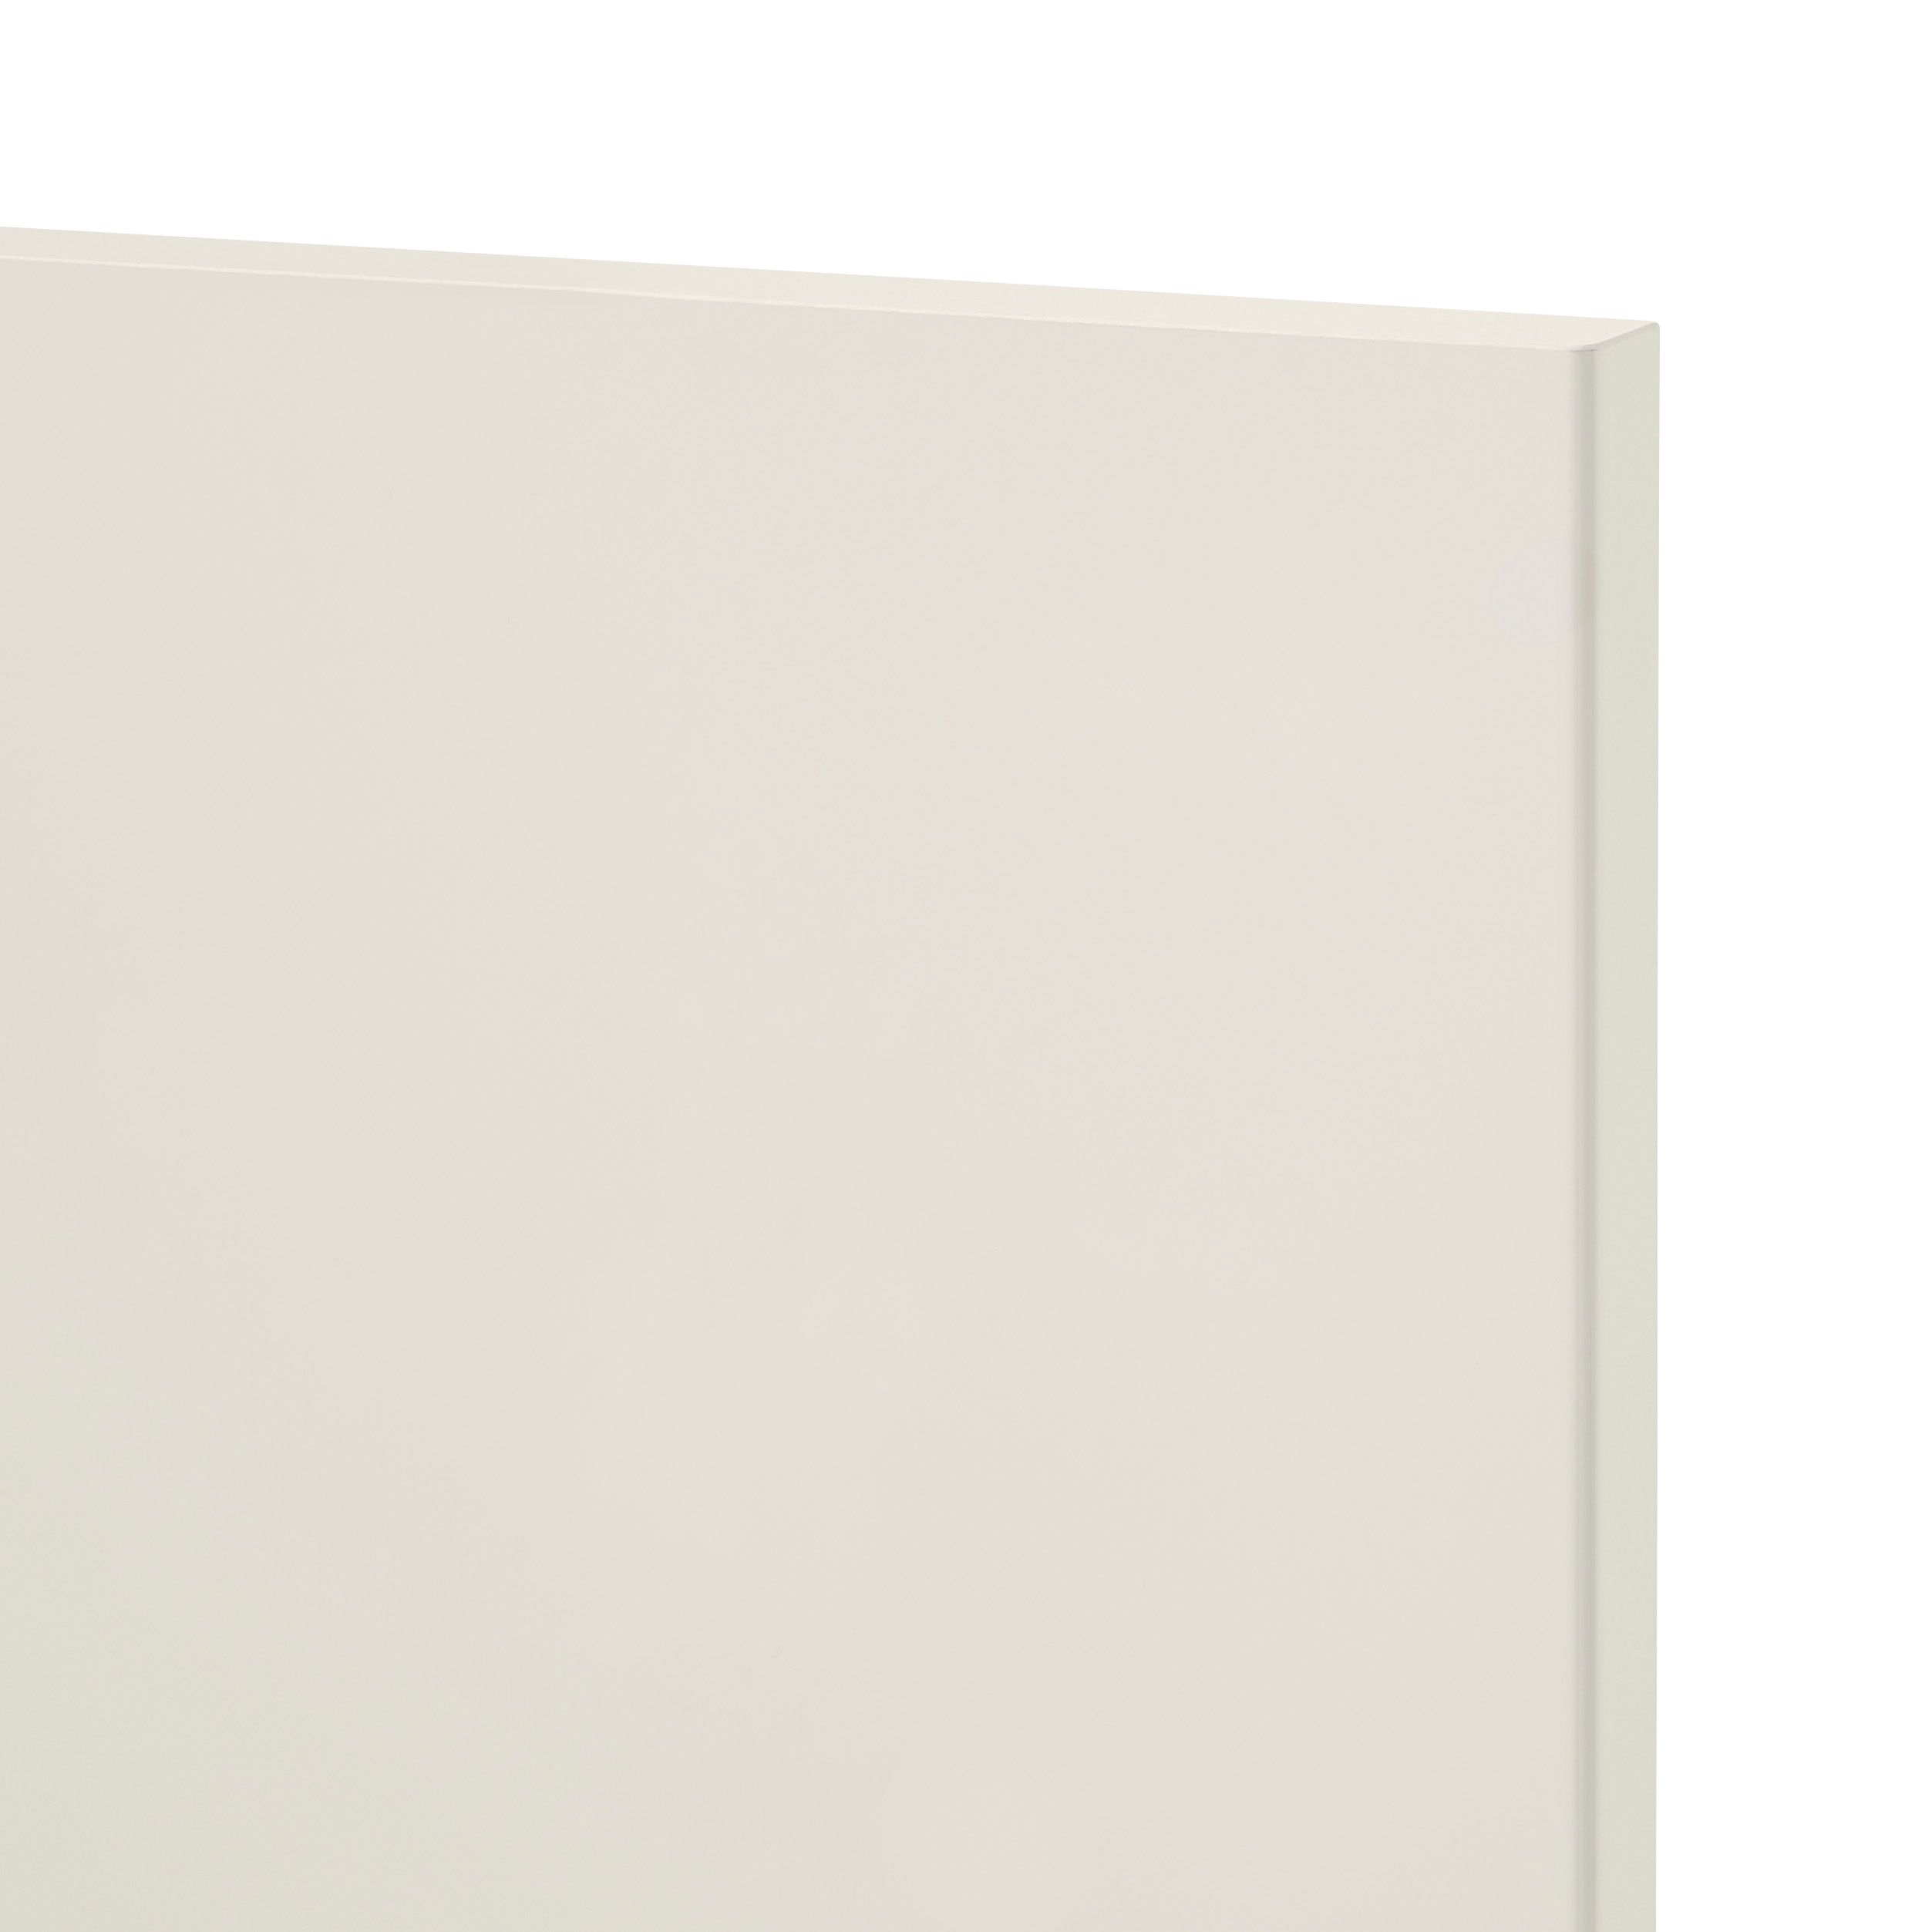 GoodHome Stevia Gloss cream slab Tall larder Cabinet door (W)600mm (H)1467mm (T)18mm